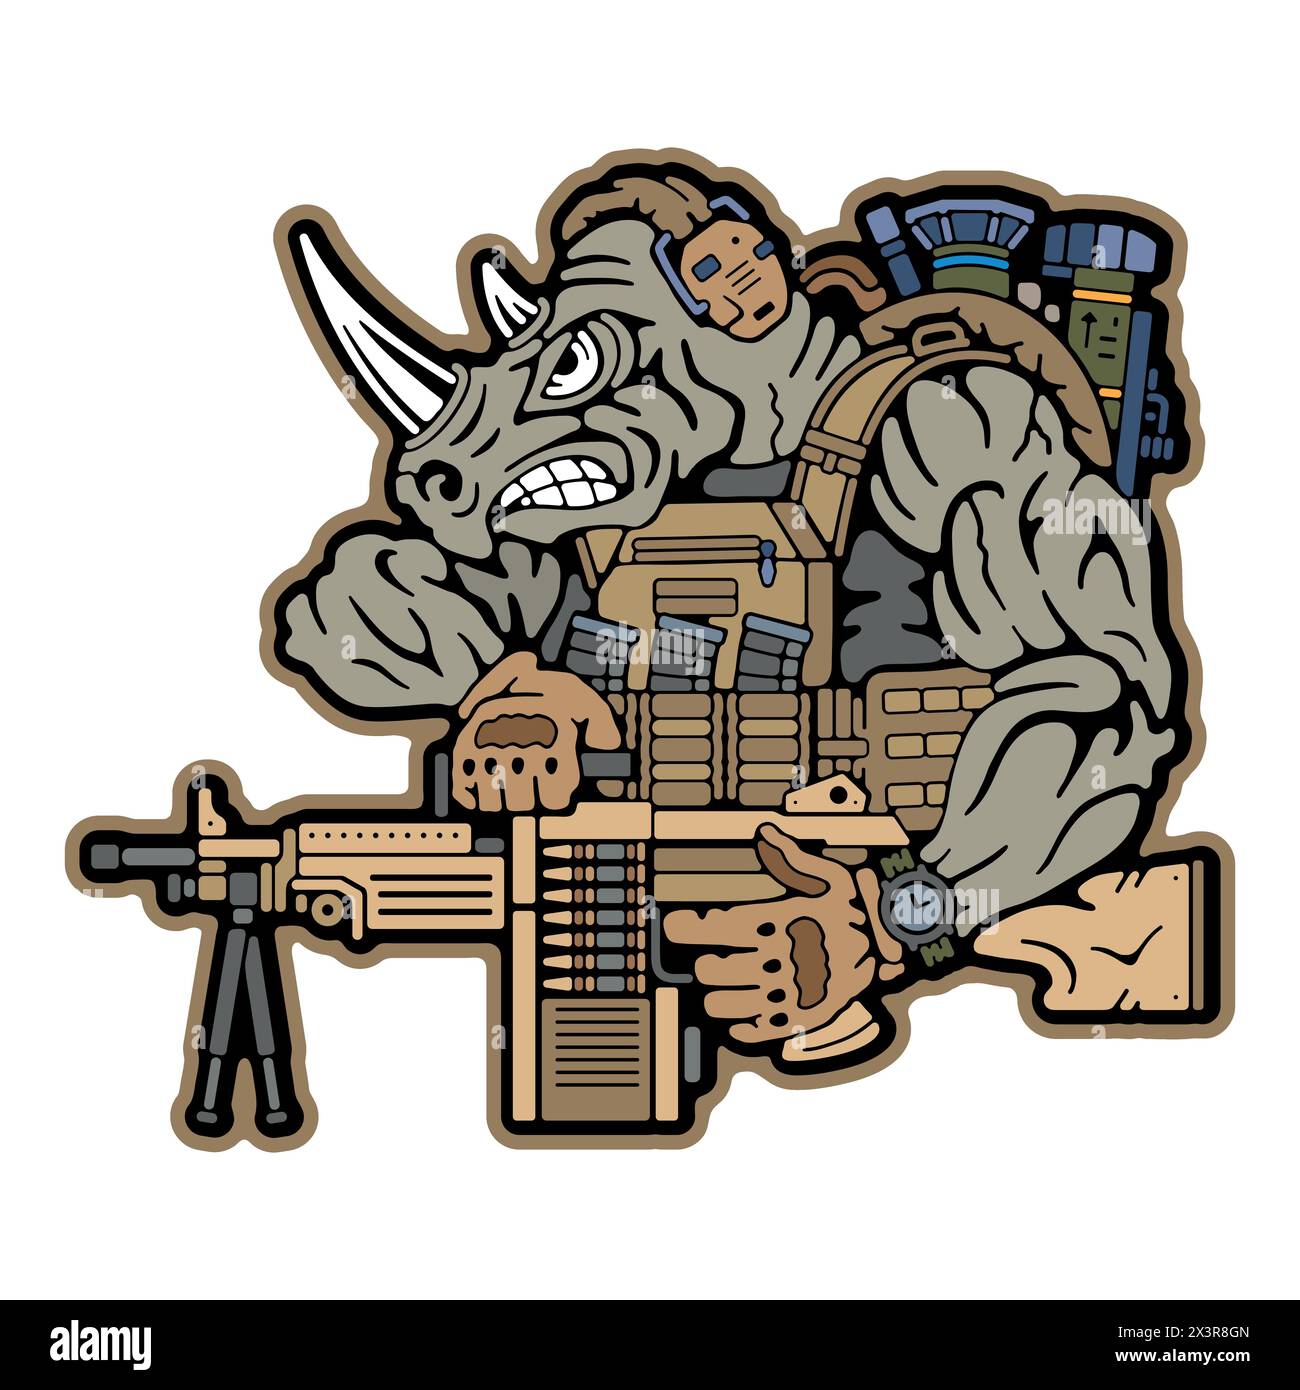 Campo militare. Distintivi dell'esercito sui vestiti. Rhino militare. Rinoceronte che tiene un'arma. Francobollo dell'esercito. Emblema militare. Immagine vettore stock Illustrazione Vettoriale